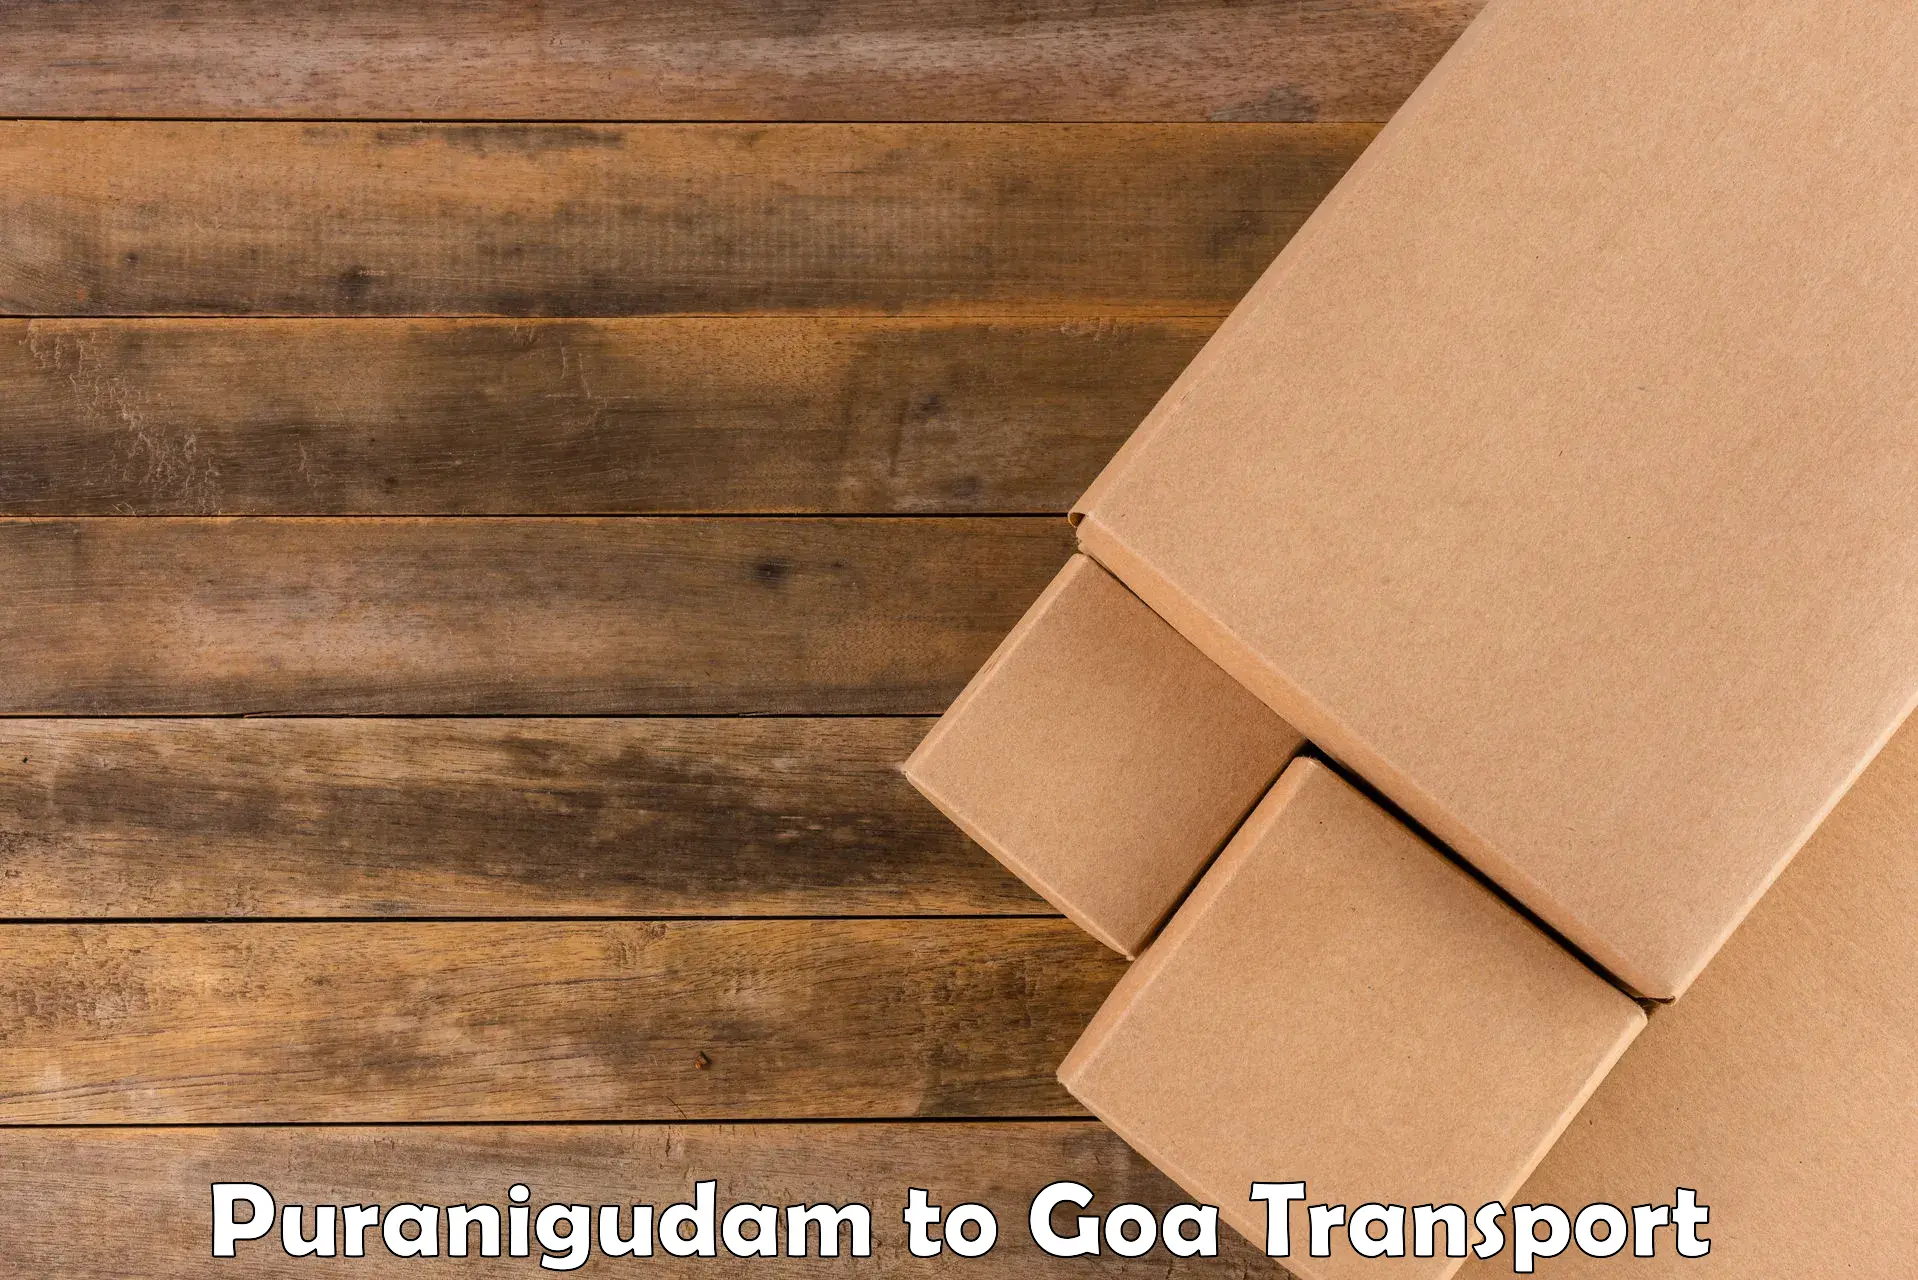 Pick up transport service Puranigudam to NIT Goa